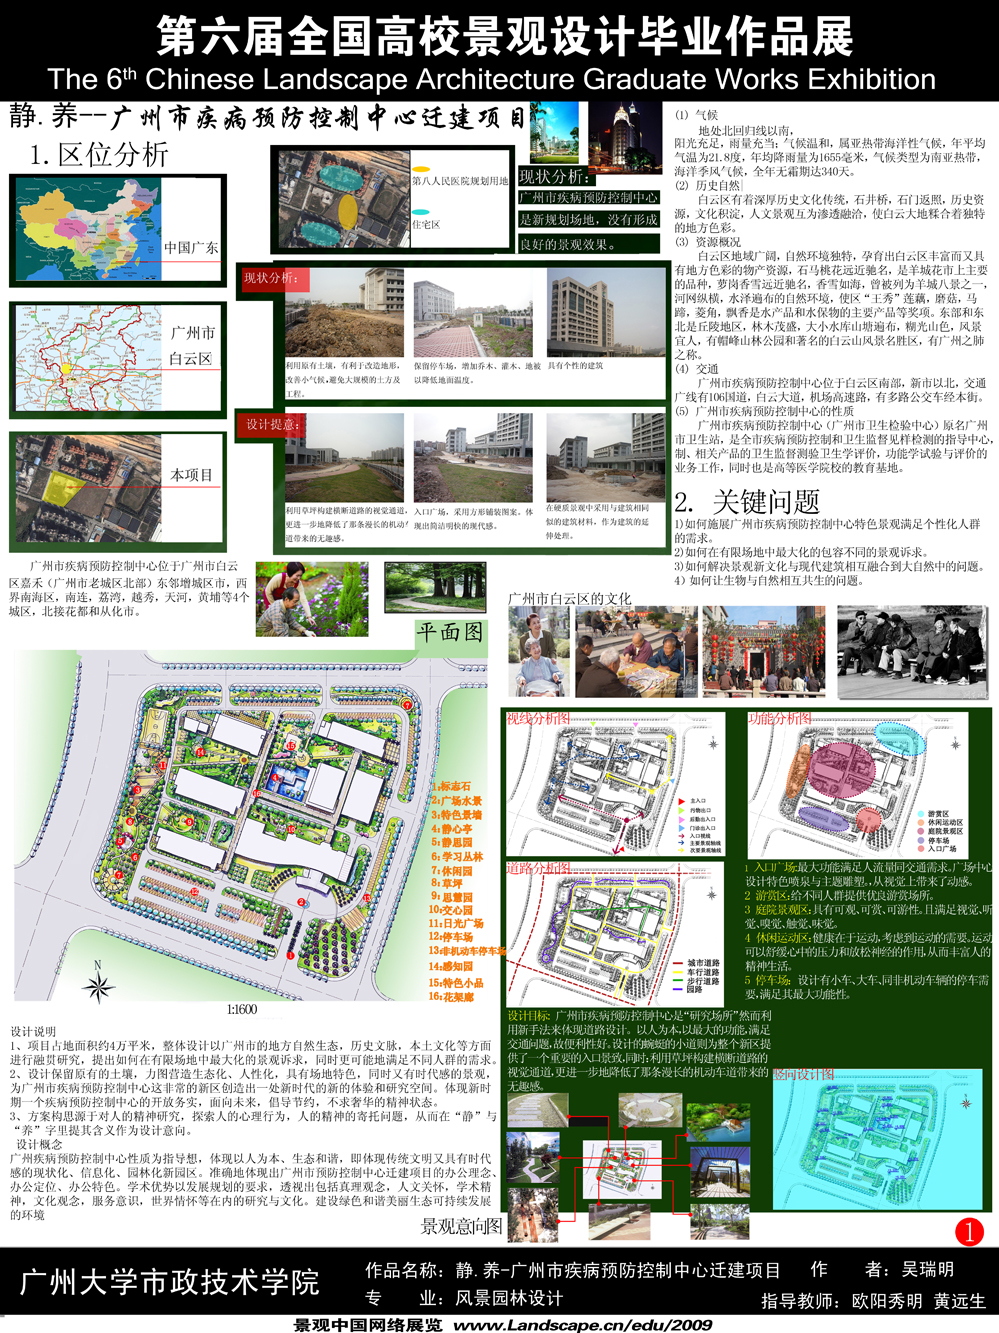 静.养 - 广州市疾病预防控制中心迁建项目-1